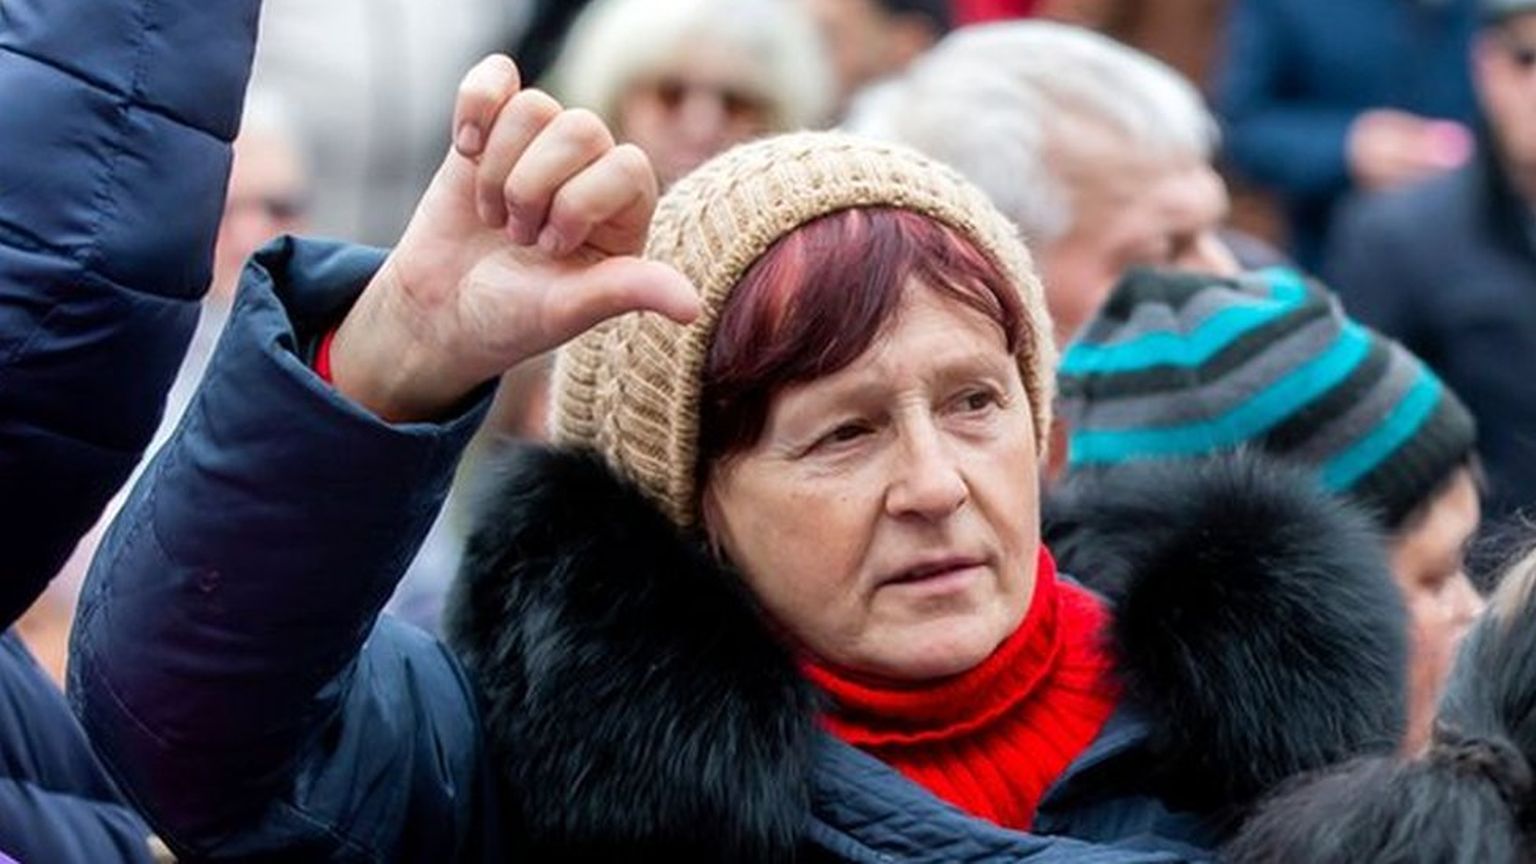 Протесты в Молдове